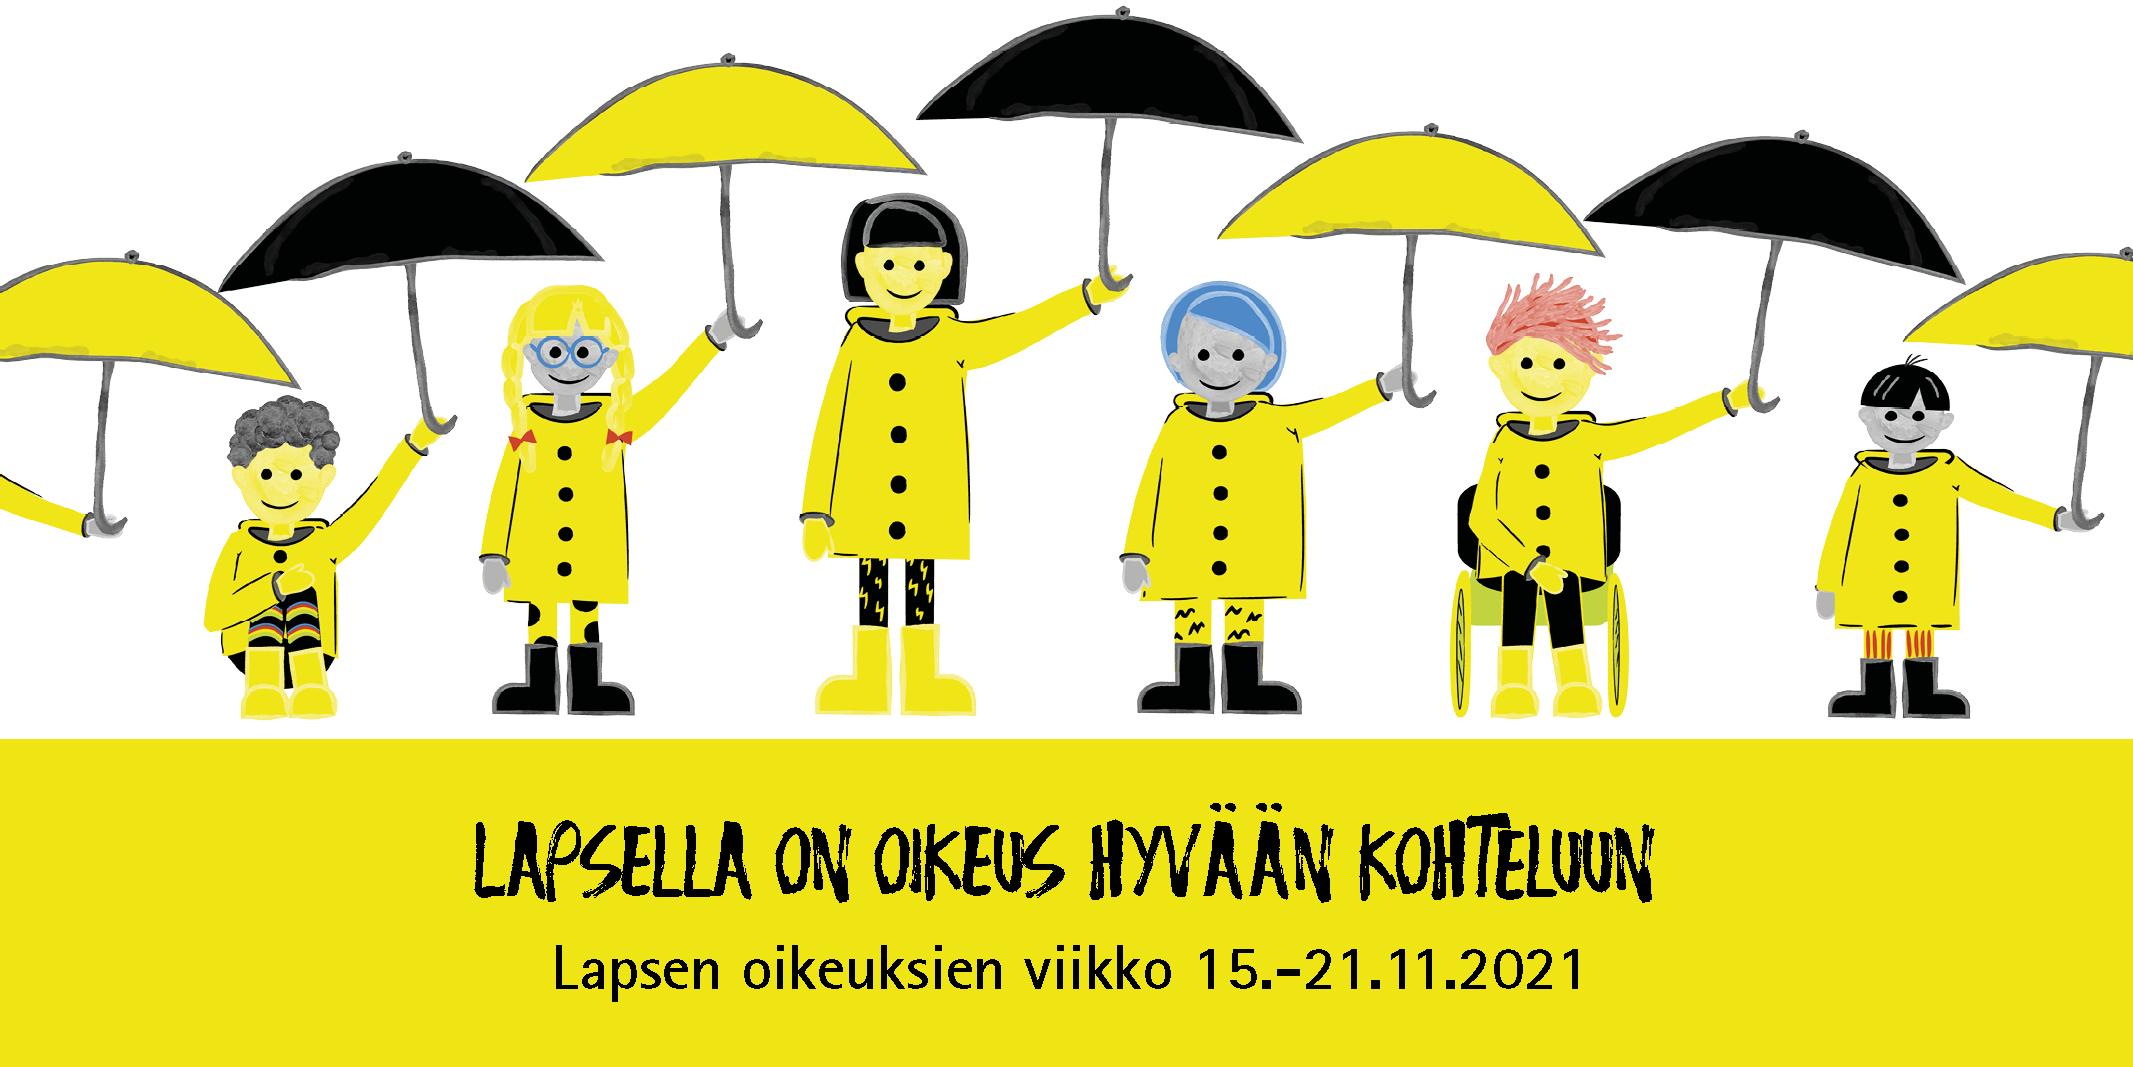 Piirroskuvia lapsista sateenvarjojen kanssa rivissä seisomassa. Alla keltainen laatikko jossa lukee Lasten oikeuksien viikko ja otsikkona Lapsella on oikeus hyvään kohteluun.